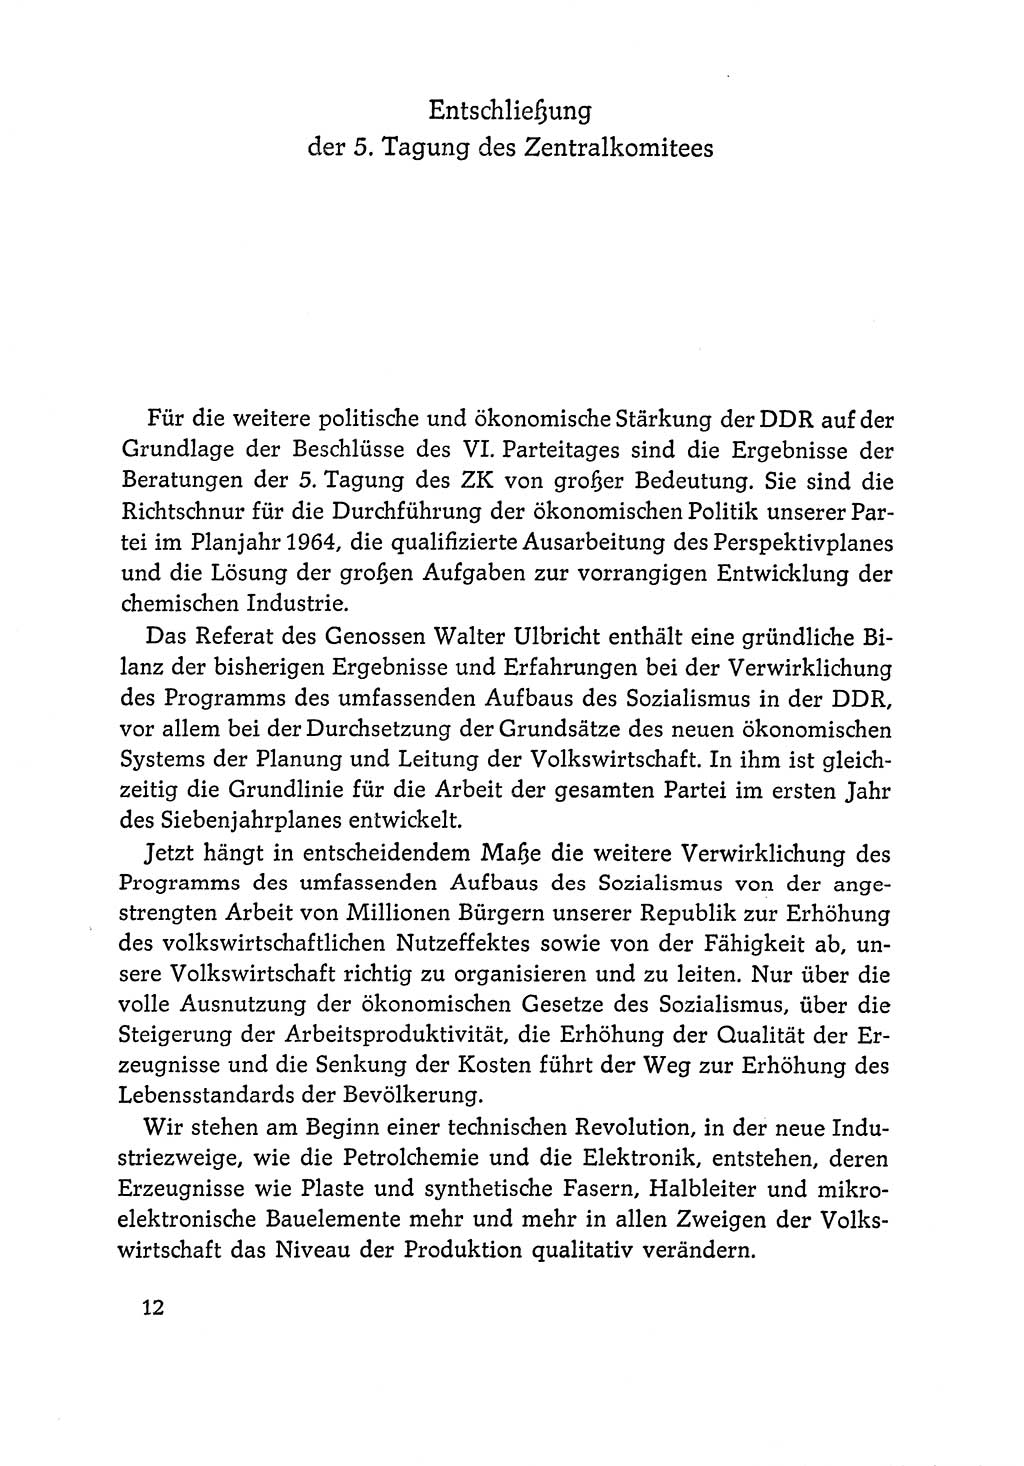 Dokumente der Sozialistischen Einheitspartei Deutschlands (SED) [Deutsche Demokratische Republik (DDR)] 1964-1965, Seite 12 (Dok. SED DDR 1964-1965, S. 12)